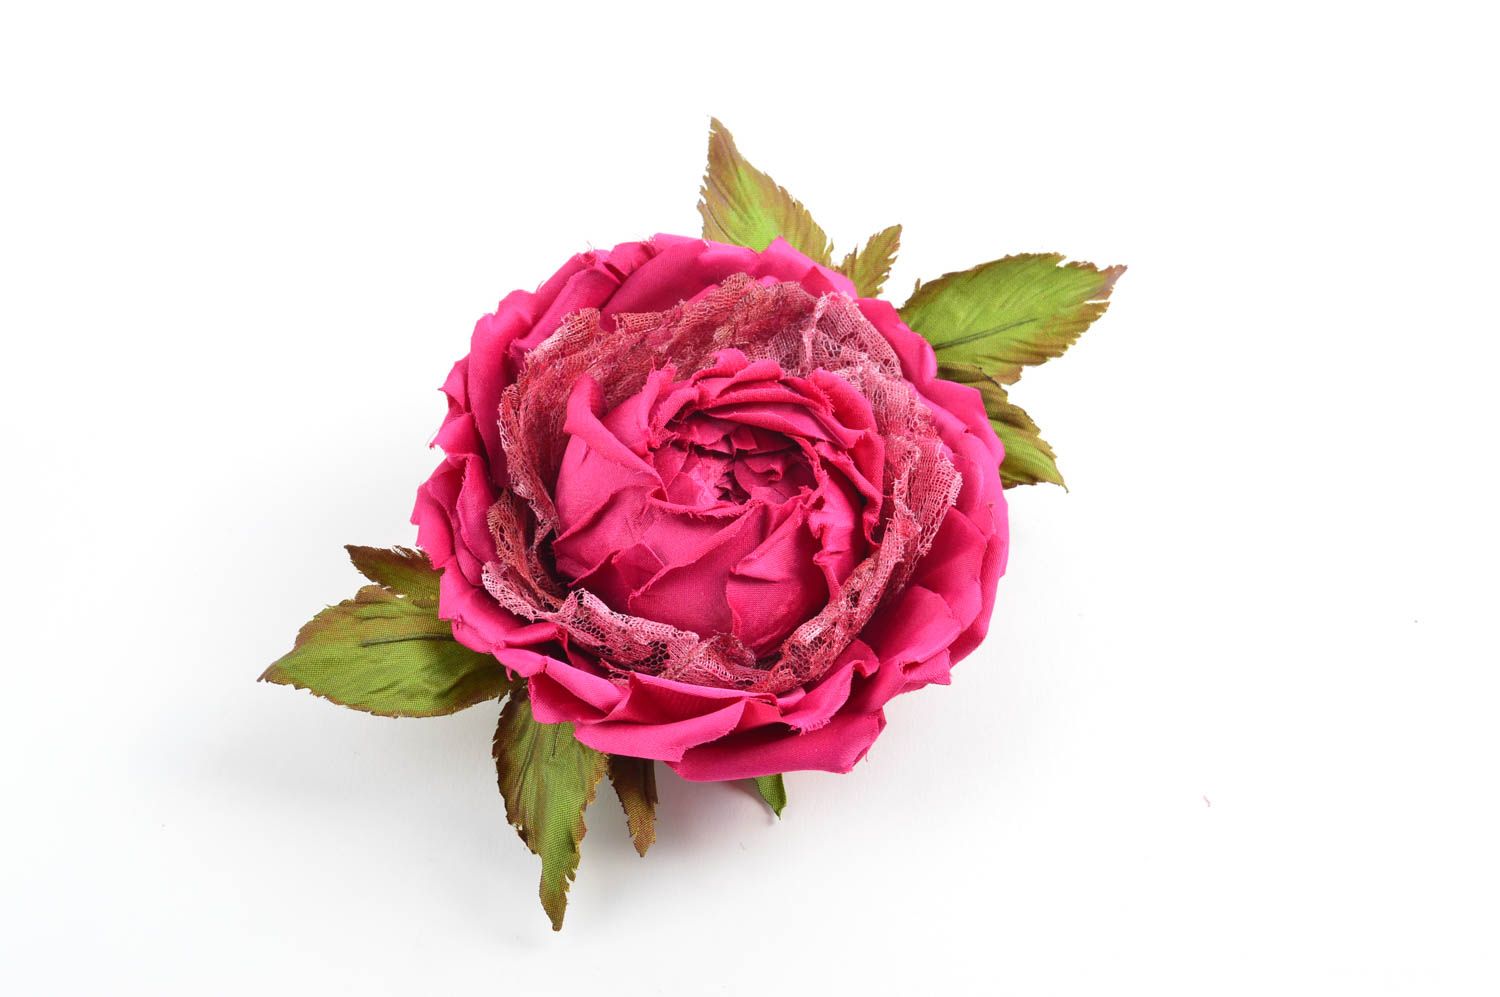 Брошь из шелка хэнд мэйд брошь-заколка пурпурная роза авторская бижутерия фото 2